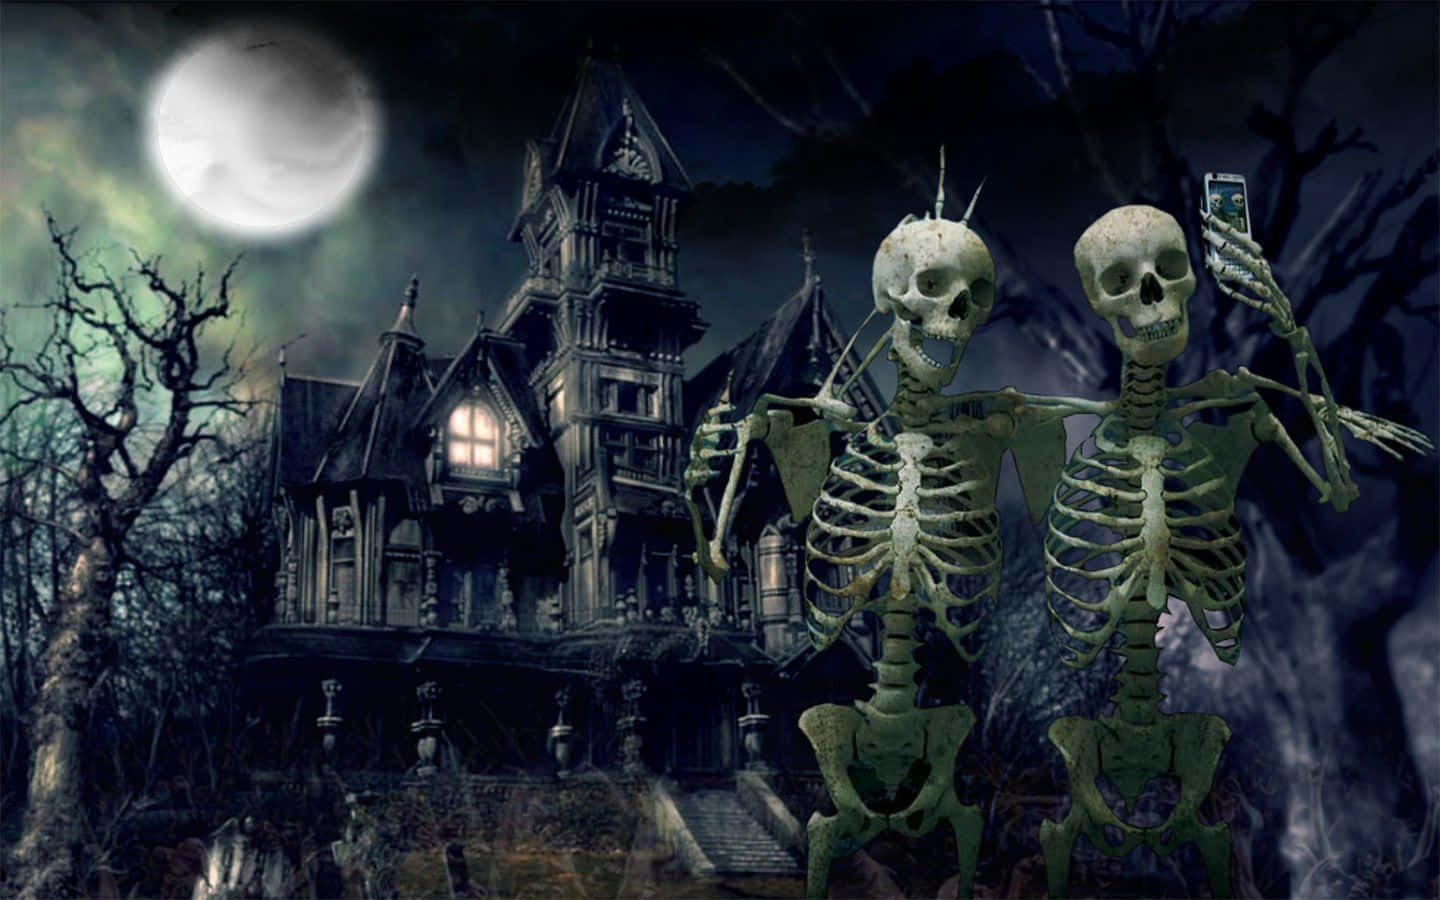 Halloween skeleton wallpaper  danasrhptop  Dibujos animados de halloween  Fondos de halloween iphone Ideas de fondos de pantalla